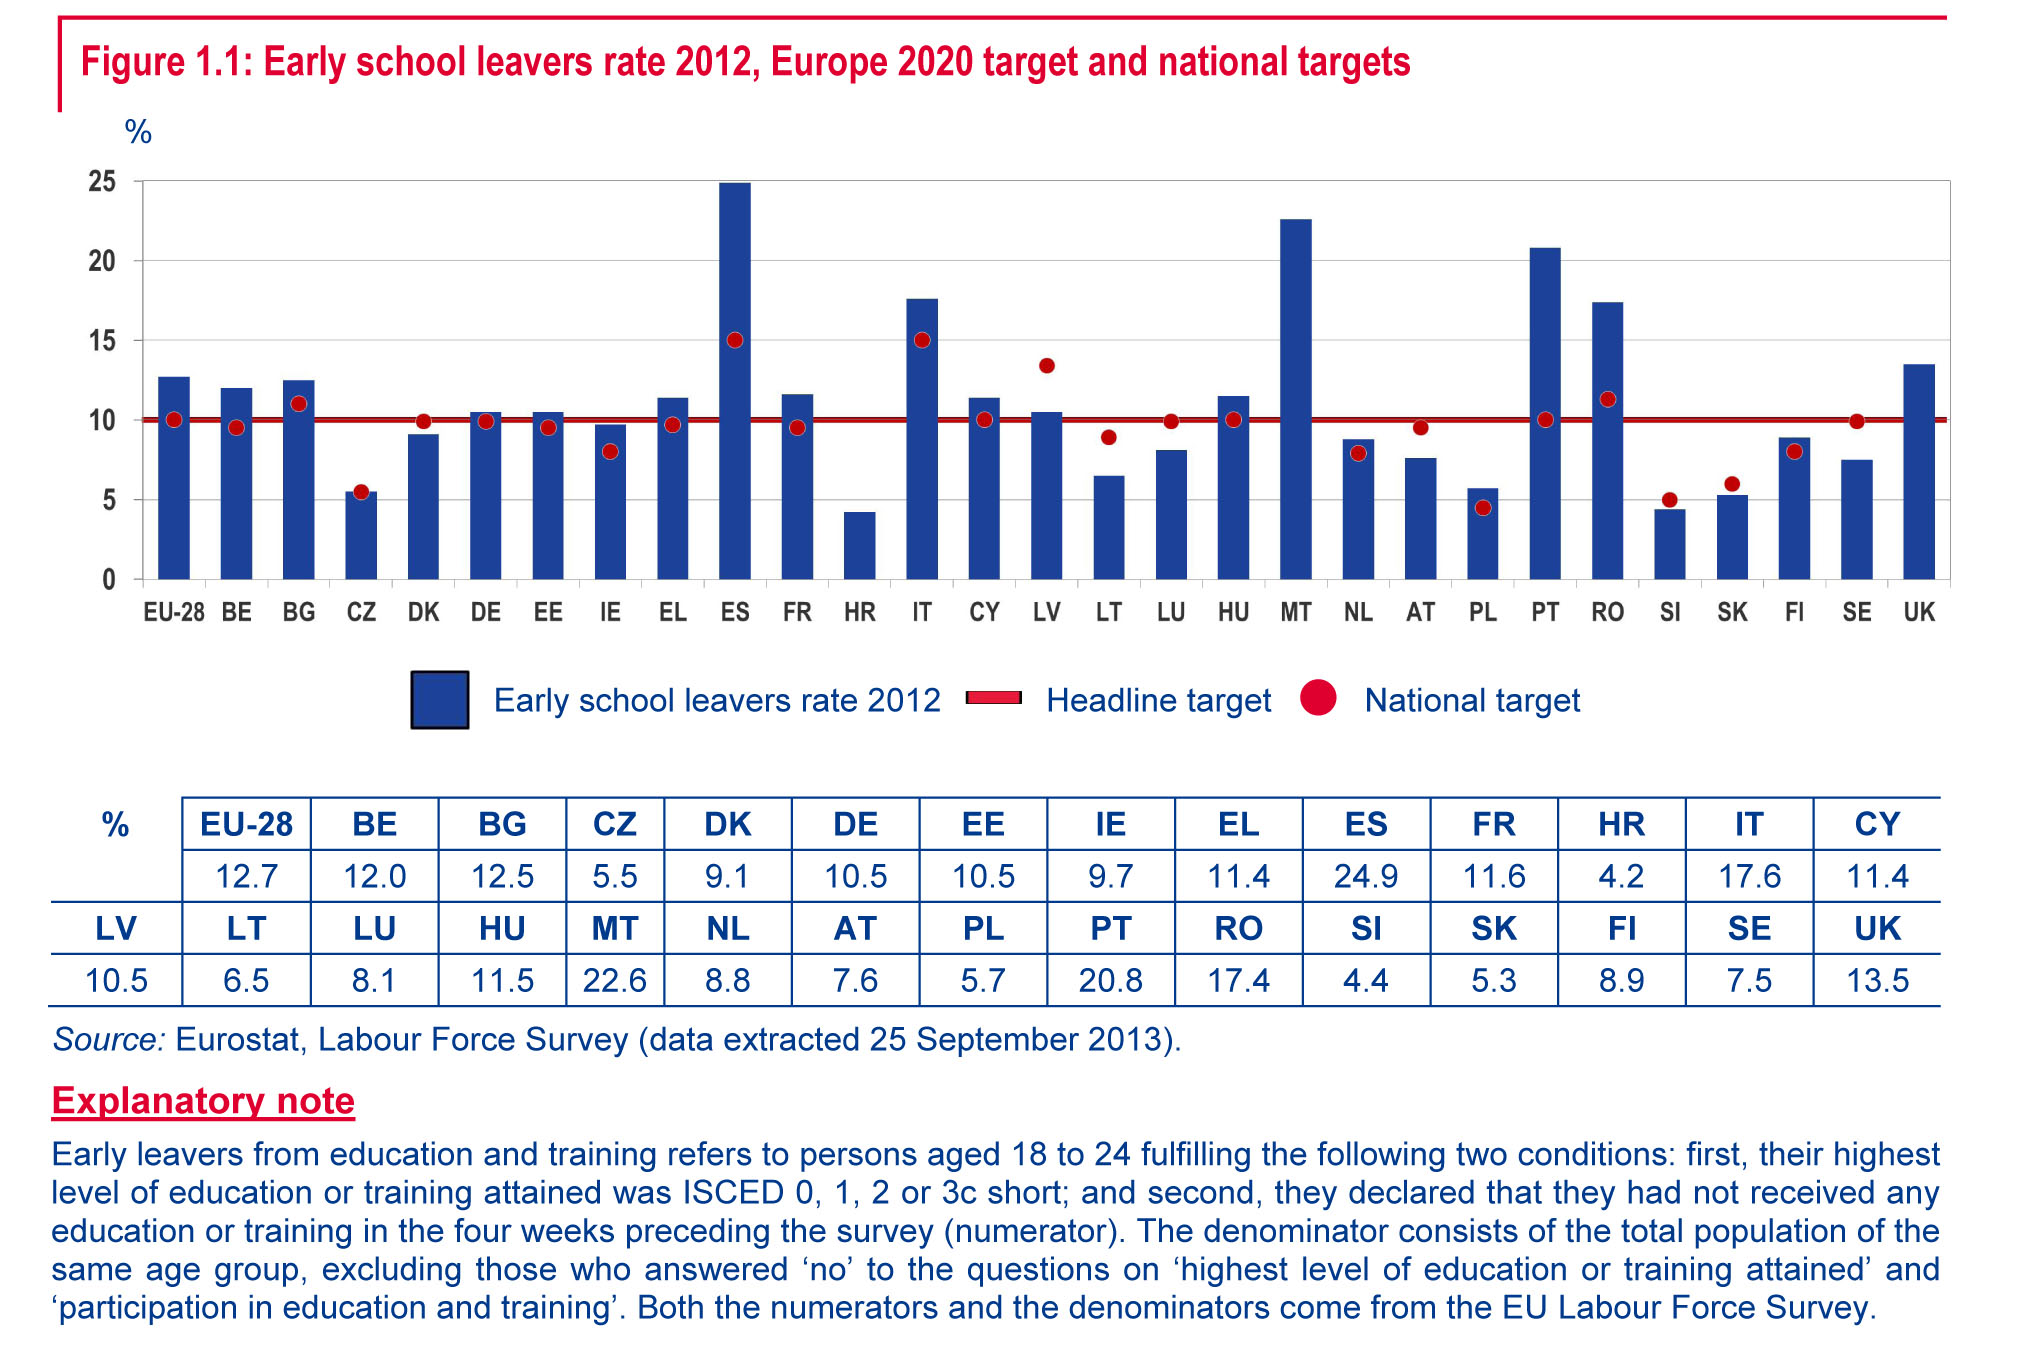 tassi di abbandono scolastico precoce 2012, obiettivi Europa 2020 obiettivi nazionali